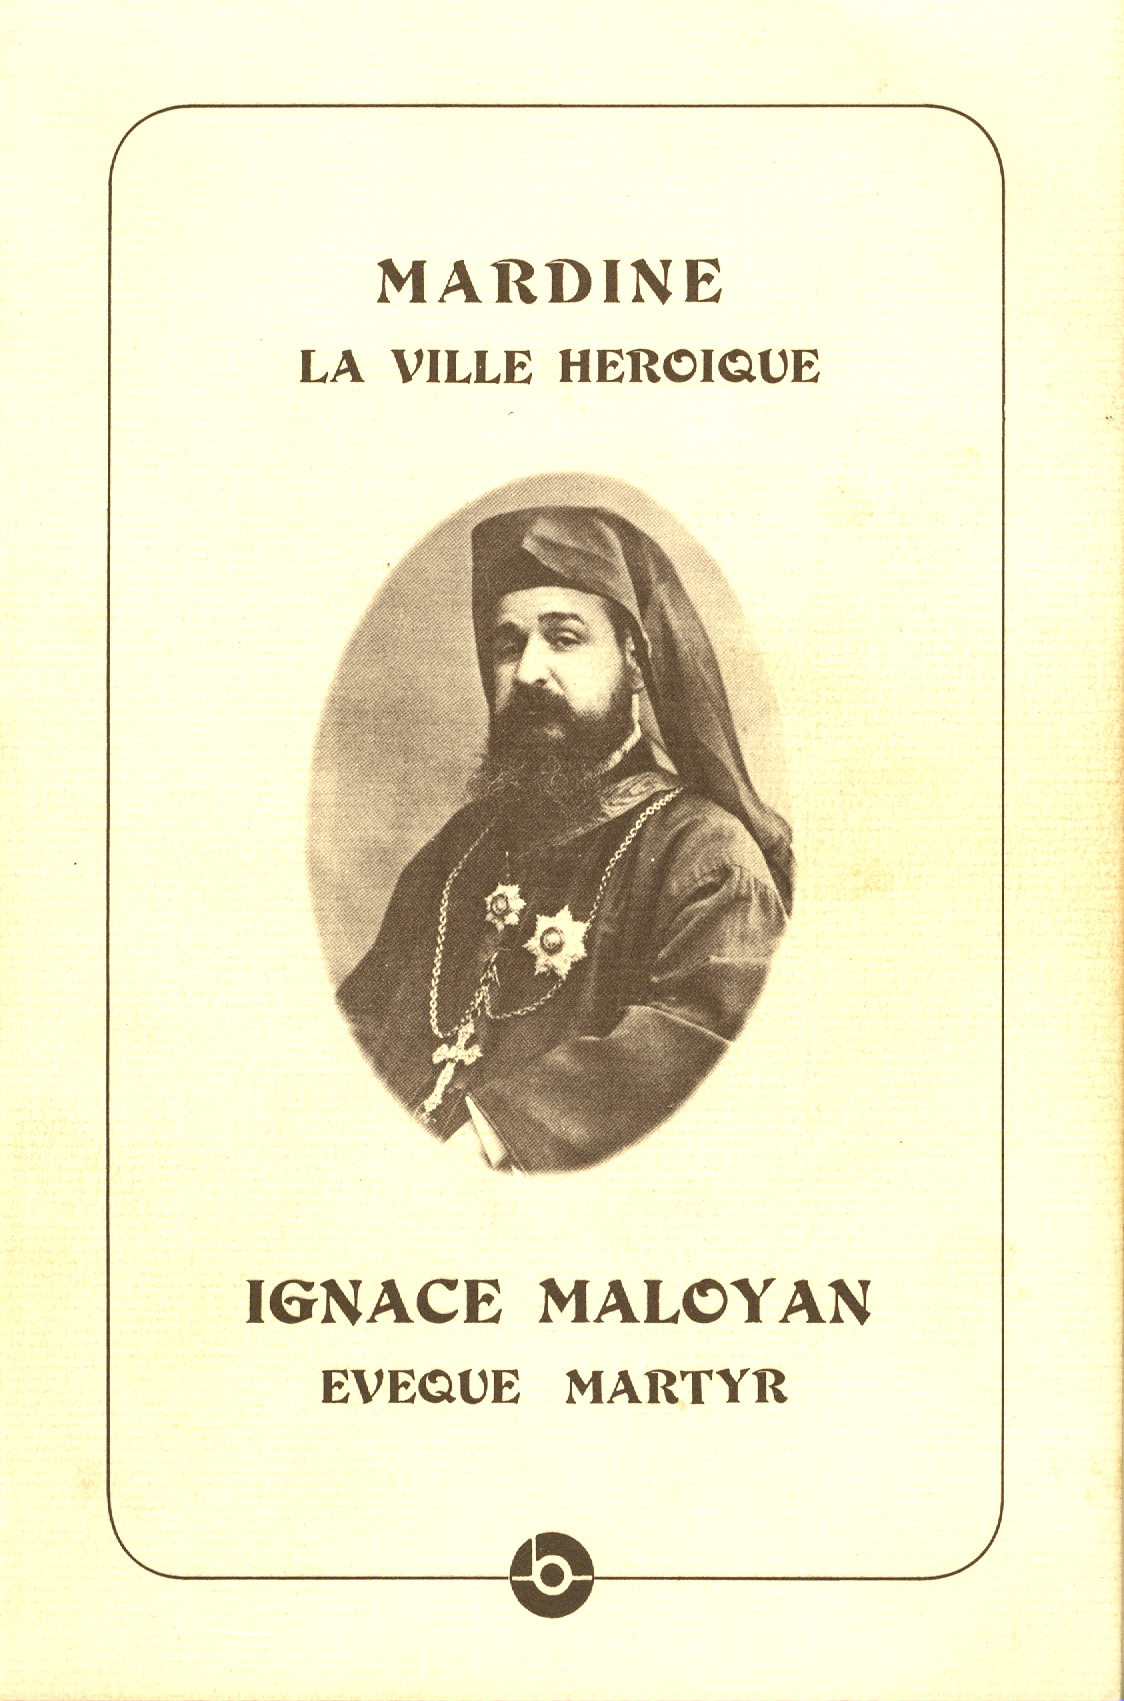 Couverture du livre du P. Hyacinthe Simon o. p. (Maison Naaman pour la culture, Jounieh, Liban, 1991)